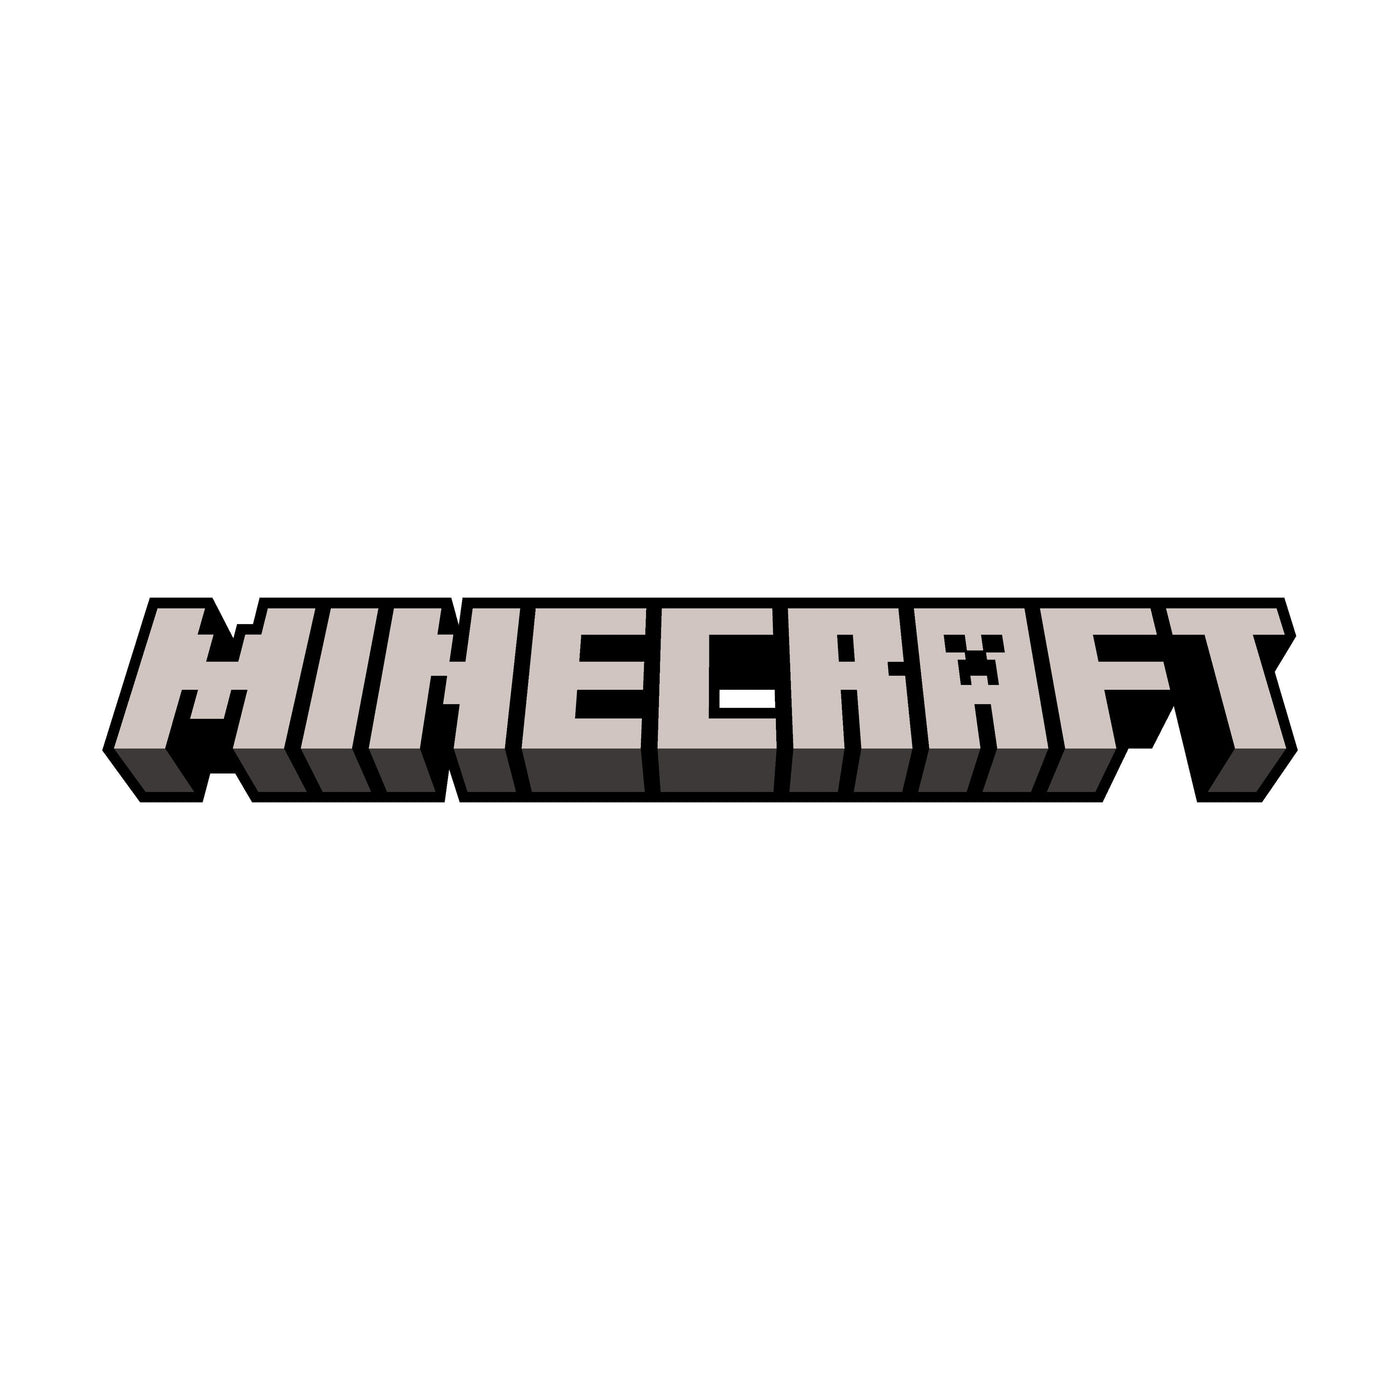 Minecraft Portal Dash Game